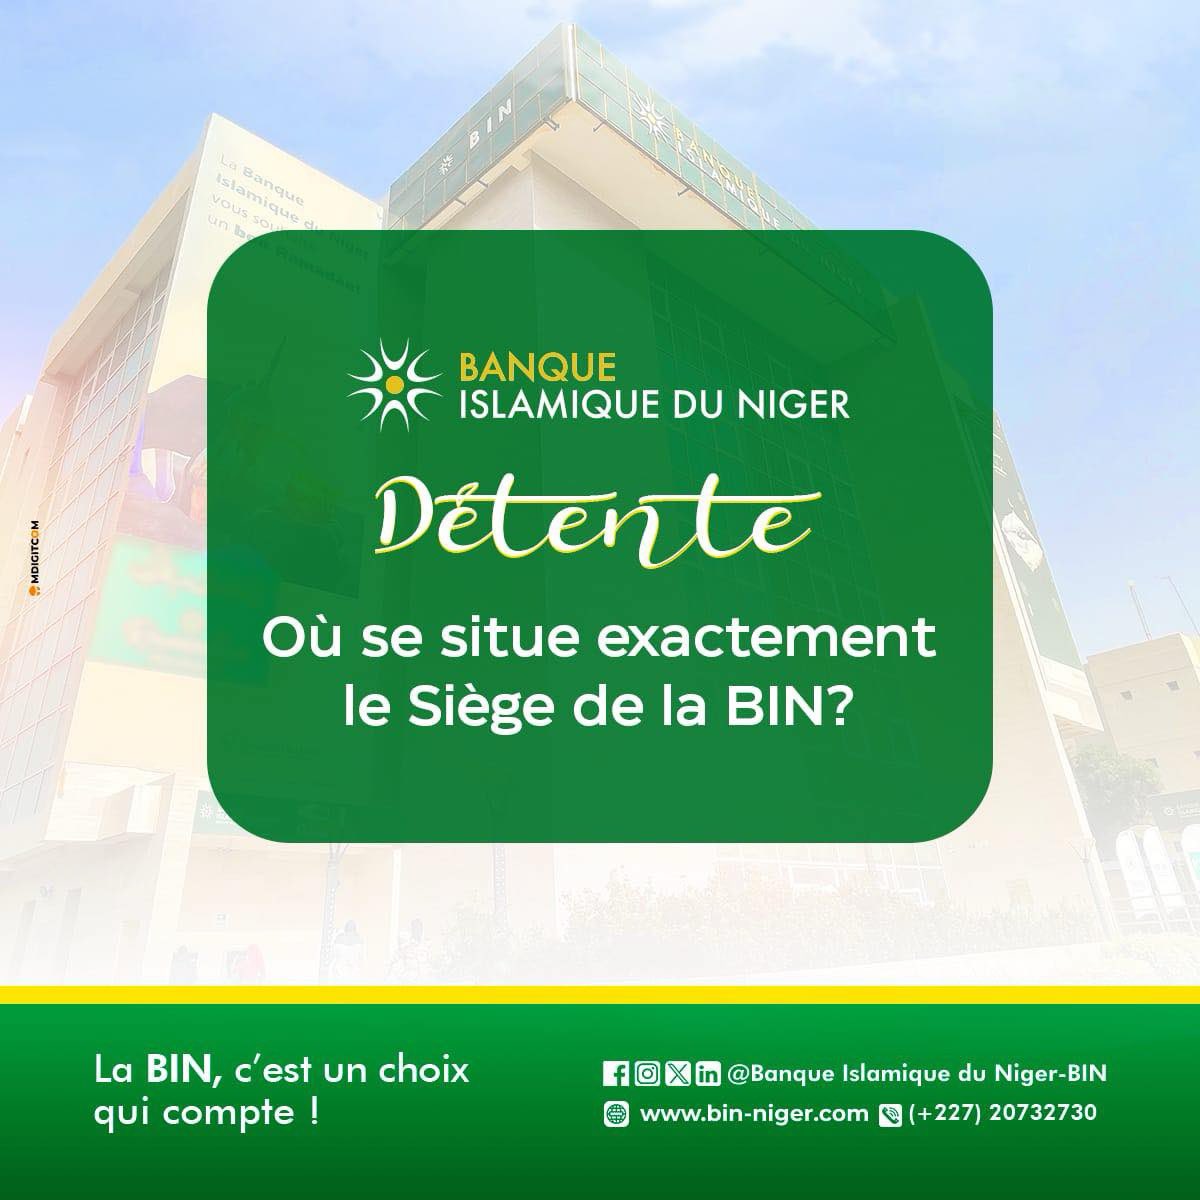 #detente 
Où se situe exactement le siège de la BIN👀?
Top réponses en commentaires 👇🏽.

Faites le choix qui compte!
—————————————
Site Web 🌐 bin-niger.com
La BIN , C’est un choix qui compte! 

#BanqueIslamiqueDuNiger #financeislamique  #BinNiger #banque #Niger